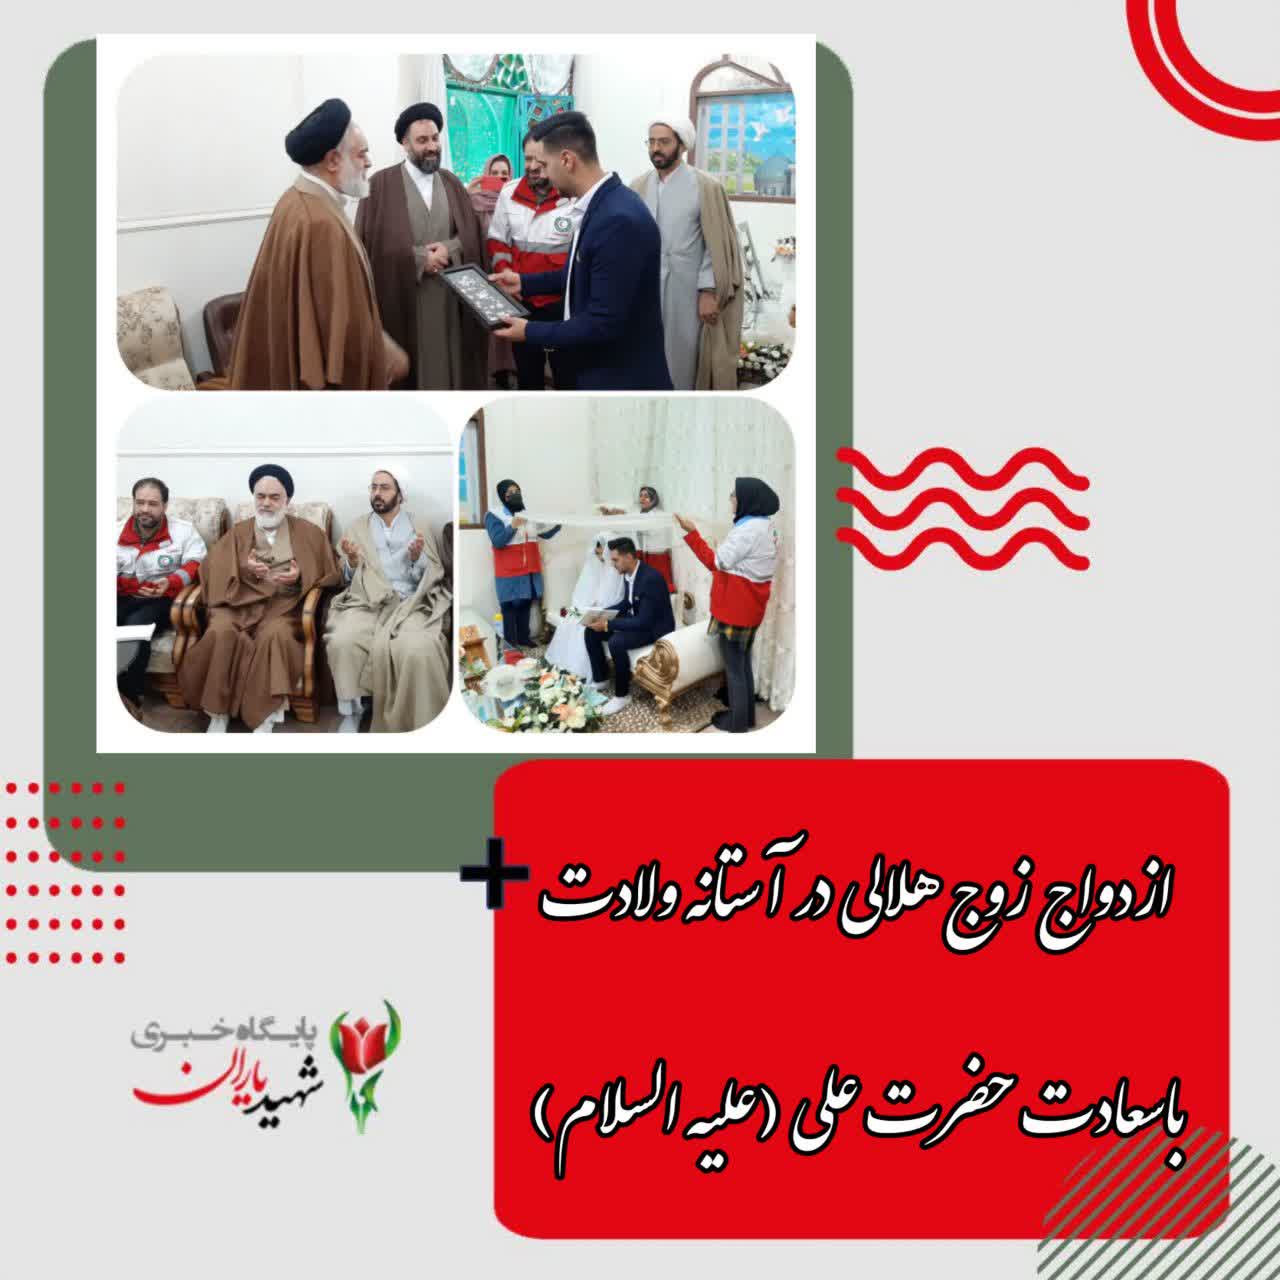 رئیس جمعیت هلال احمر شهرستان خمینی شهر خبر داد: